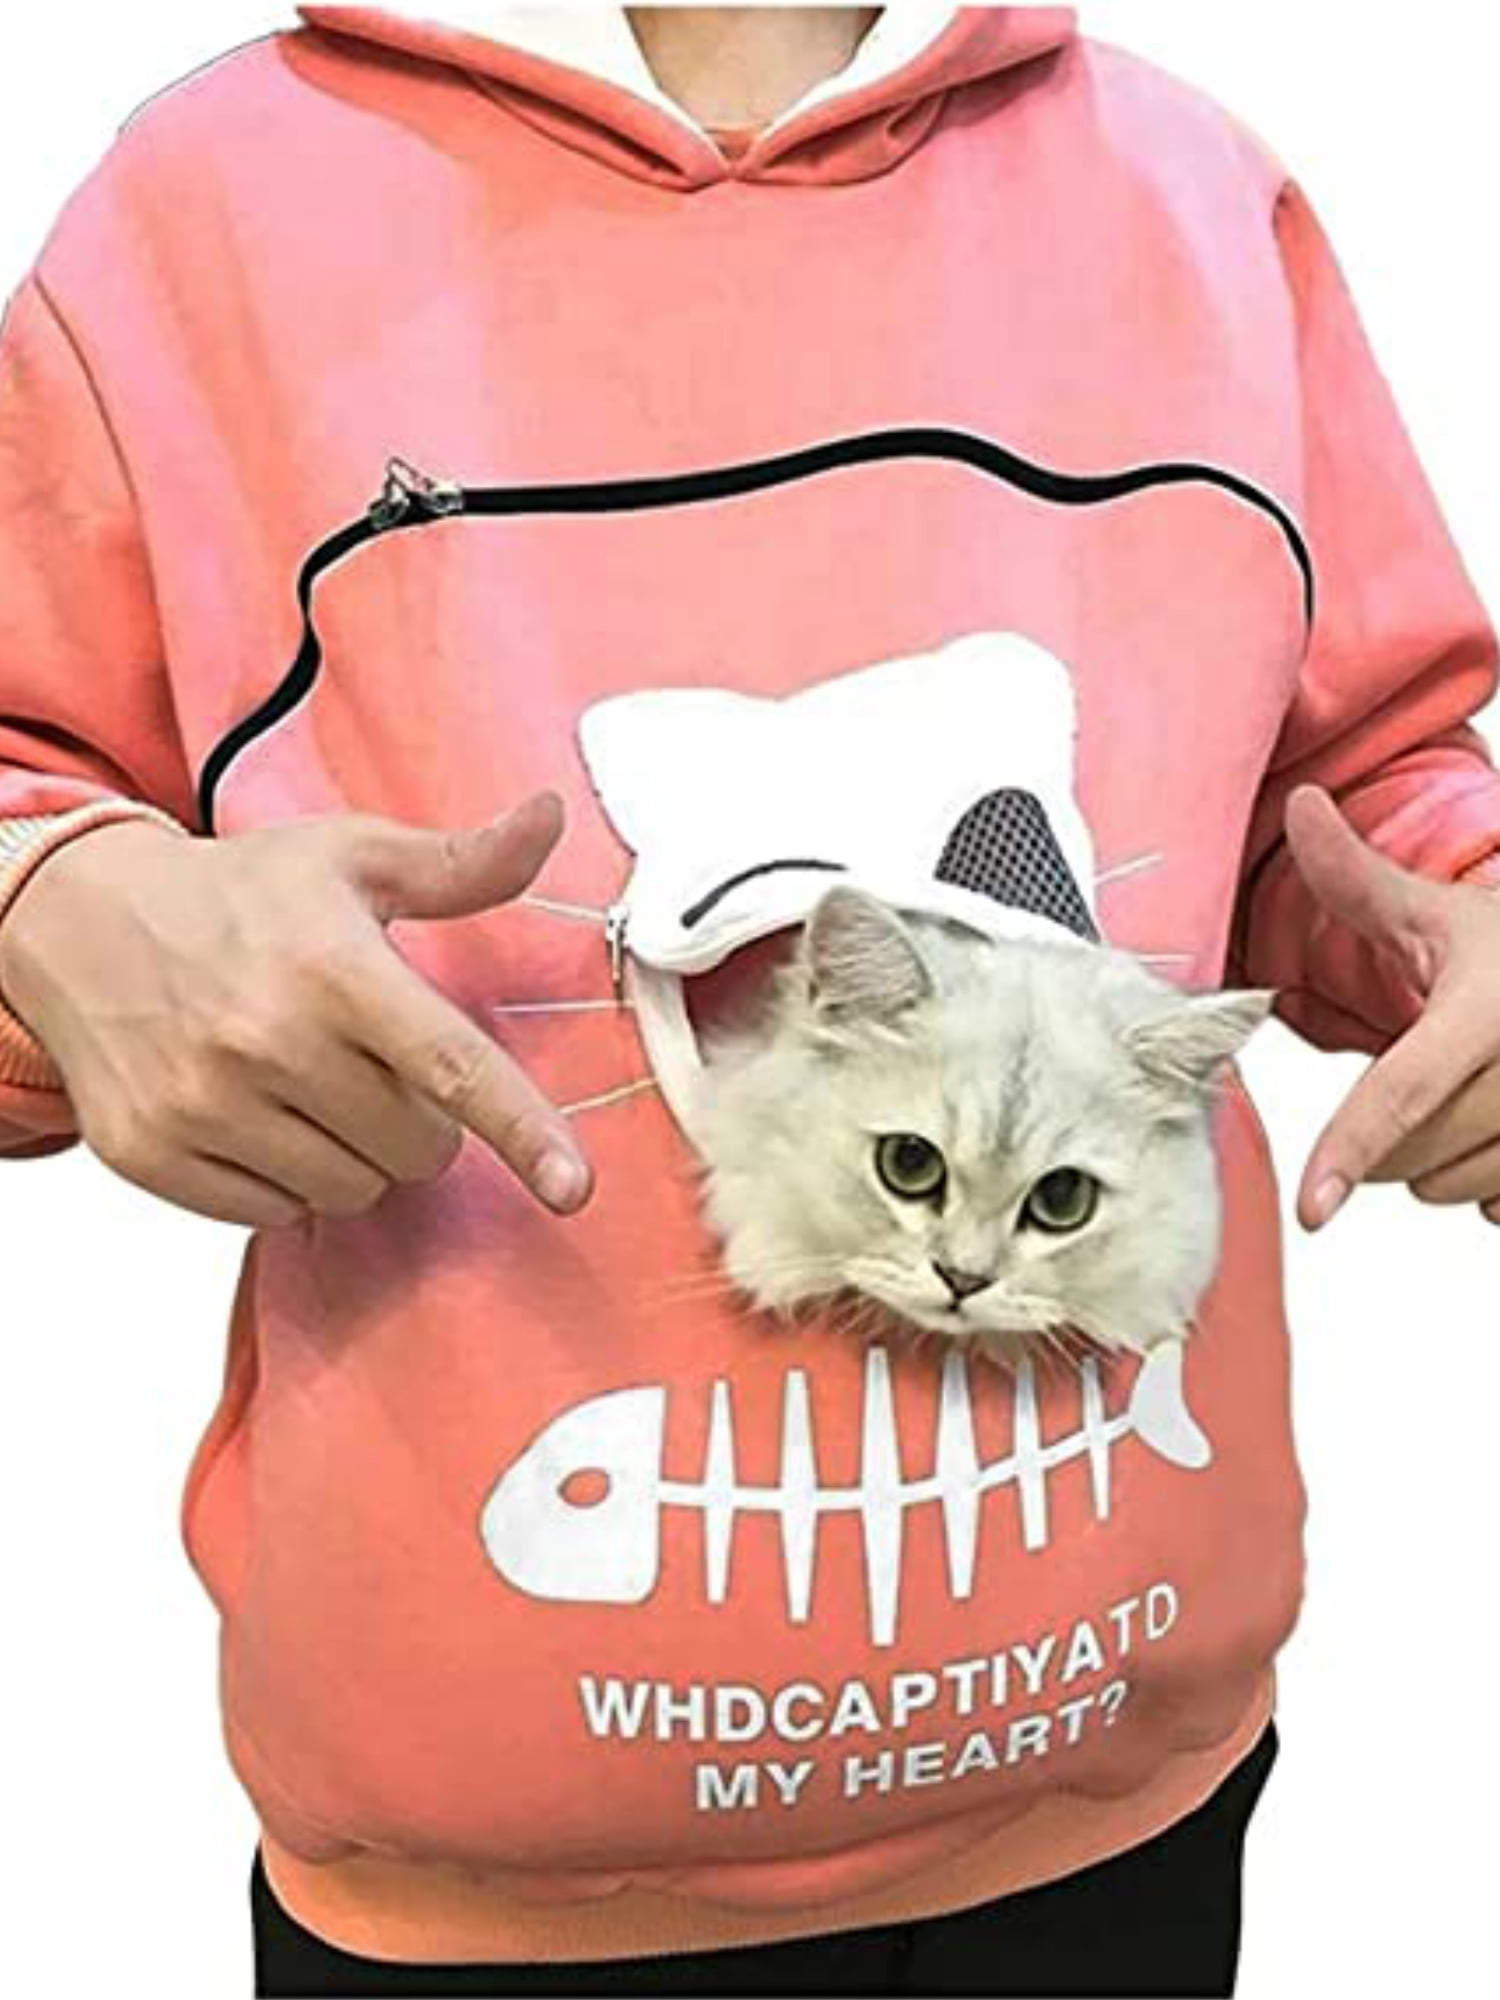 cat mom hoodie Cat mom embroidered woman zip hoodie jacket personalizable gift zip hoodie for cat lovers